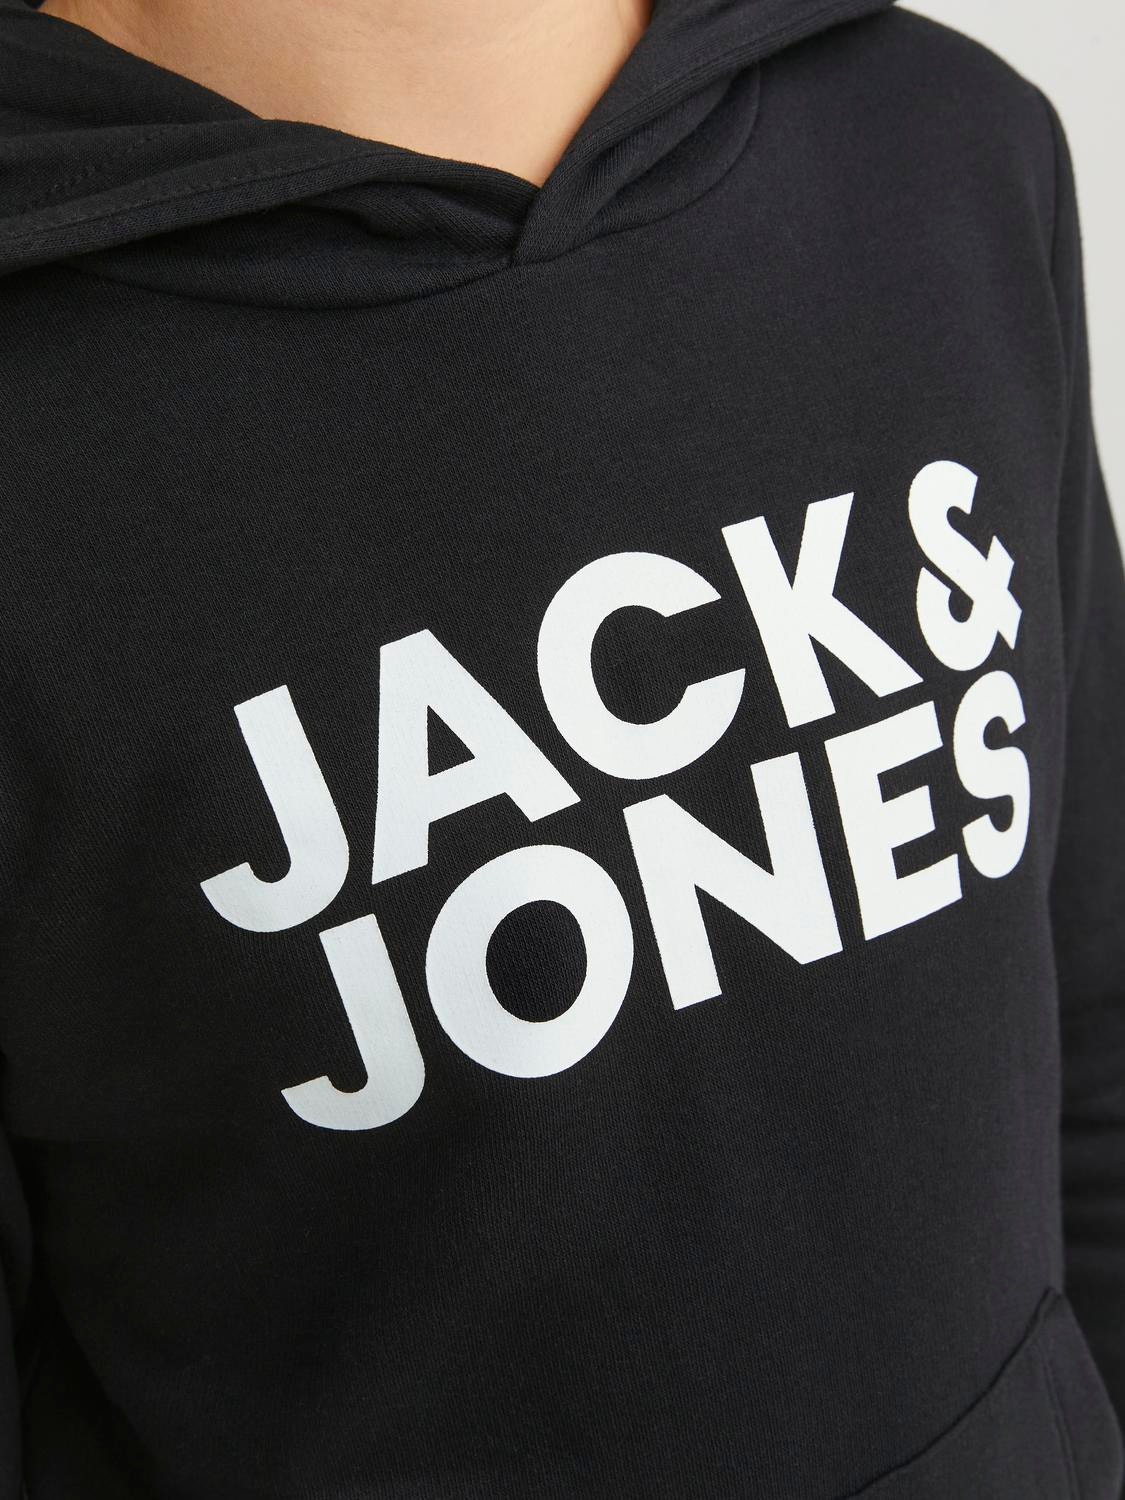 Jack & Jones Logo Kapuutsiga pusa Junior -Black - 12152841